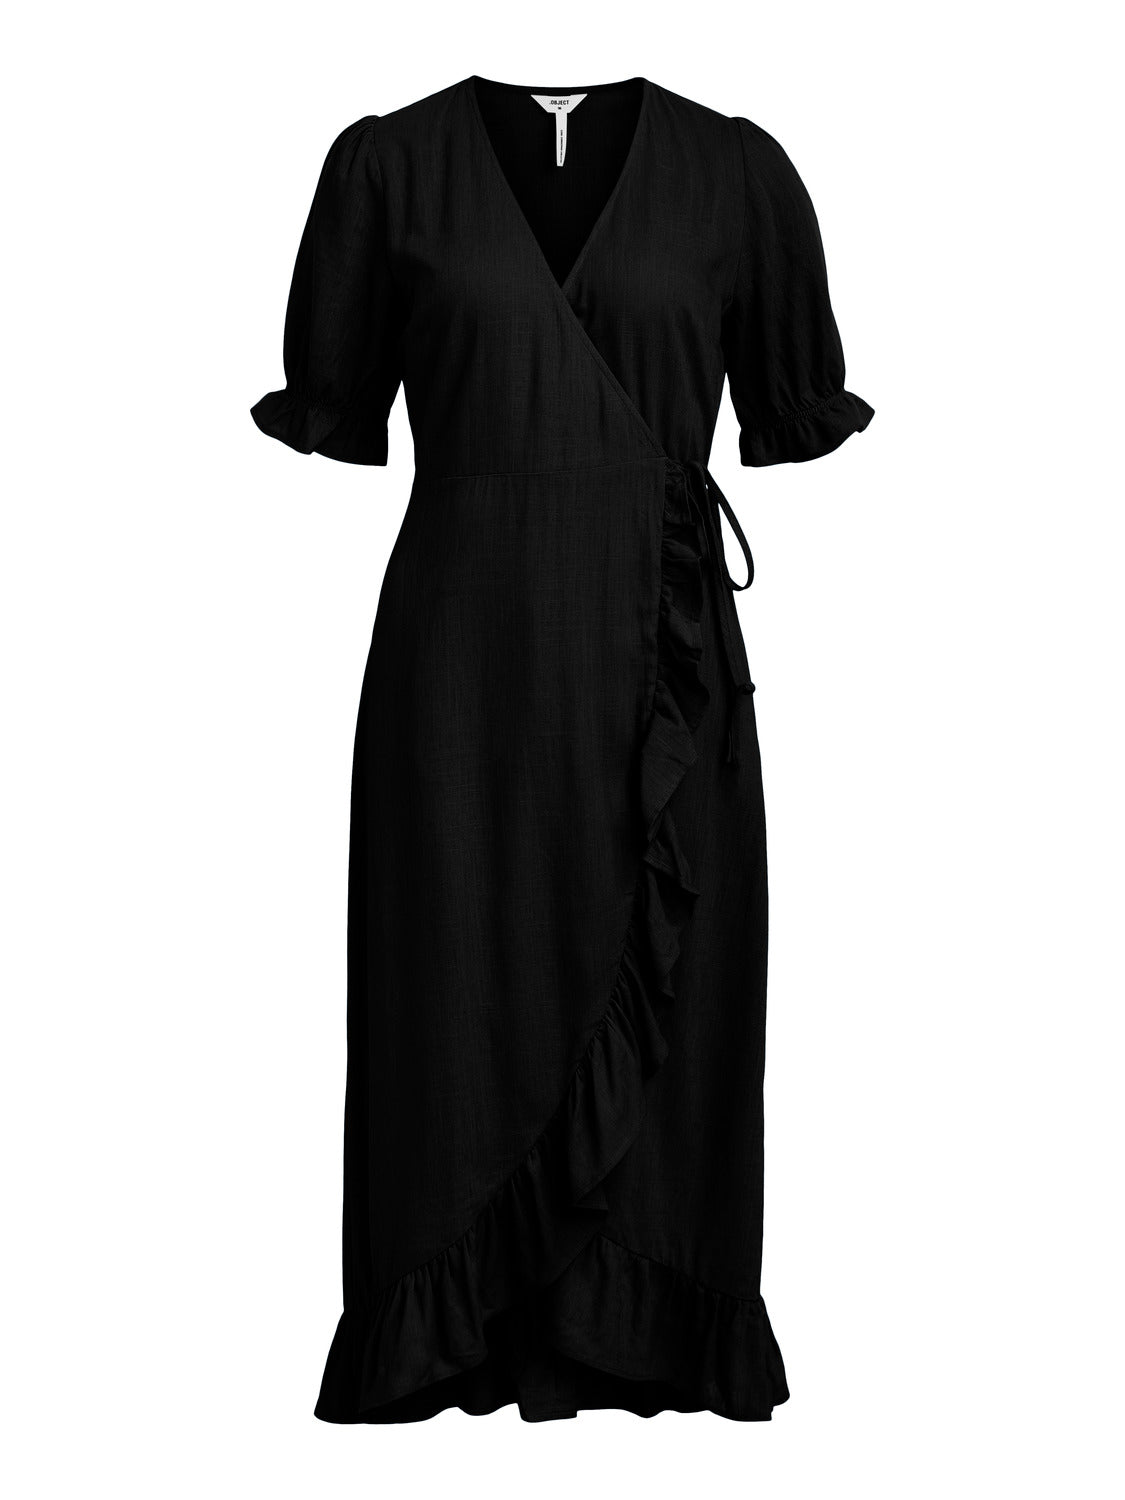 OBJAMMIE Dress - Black